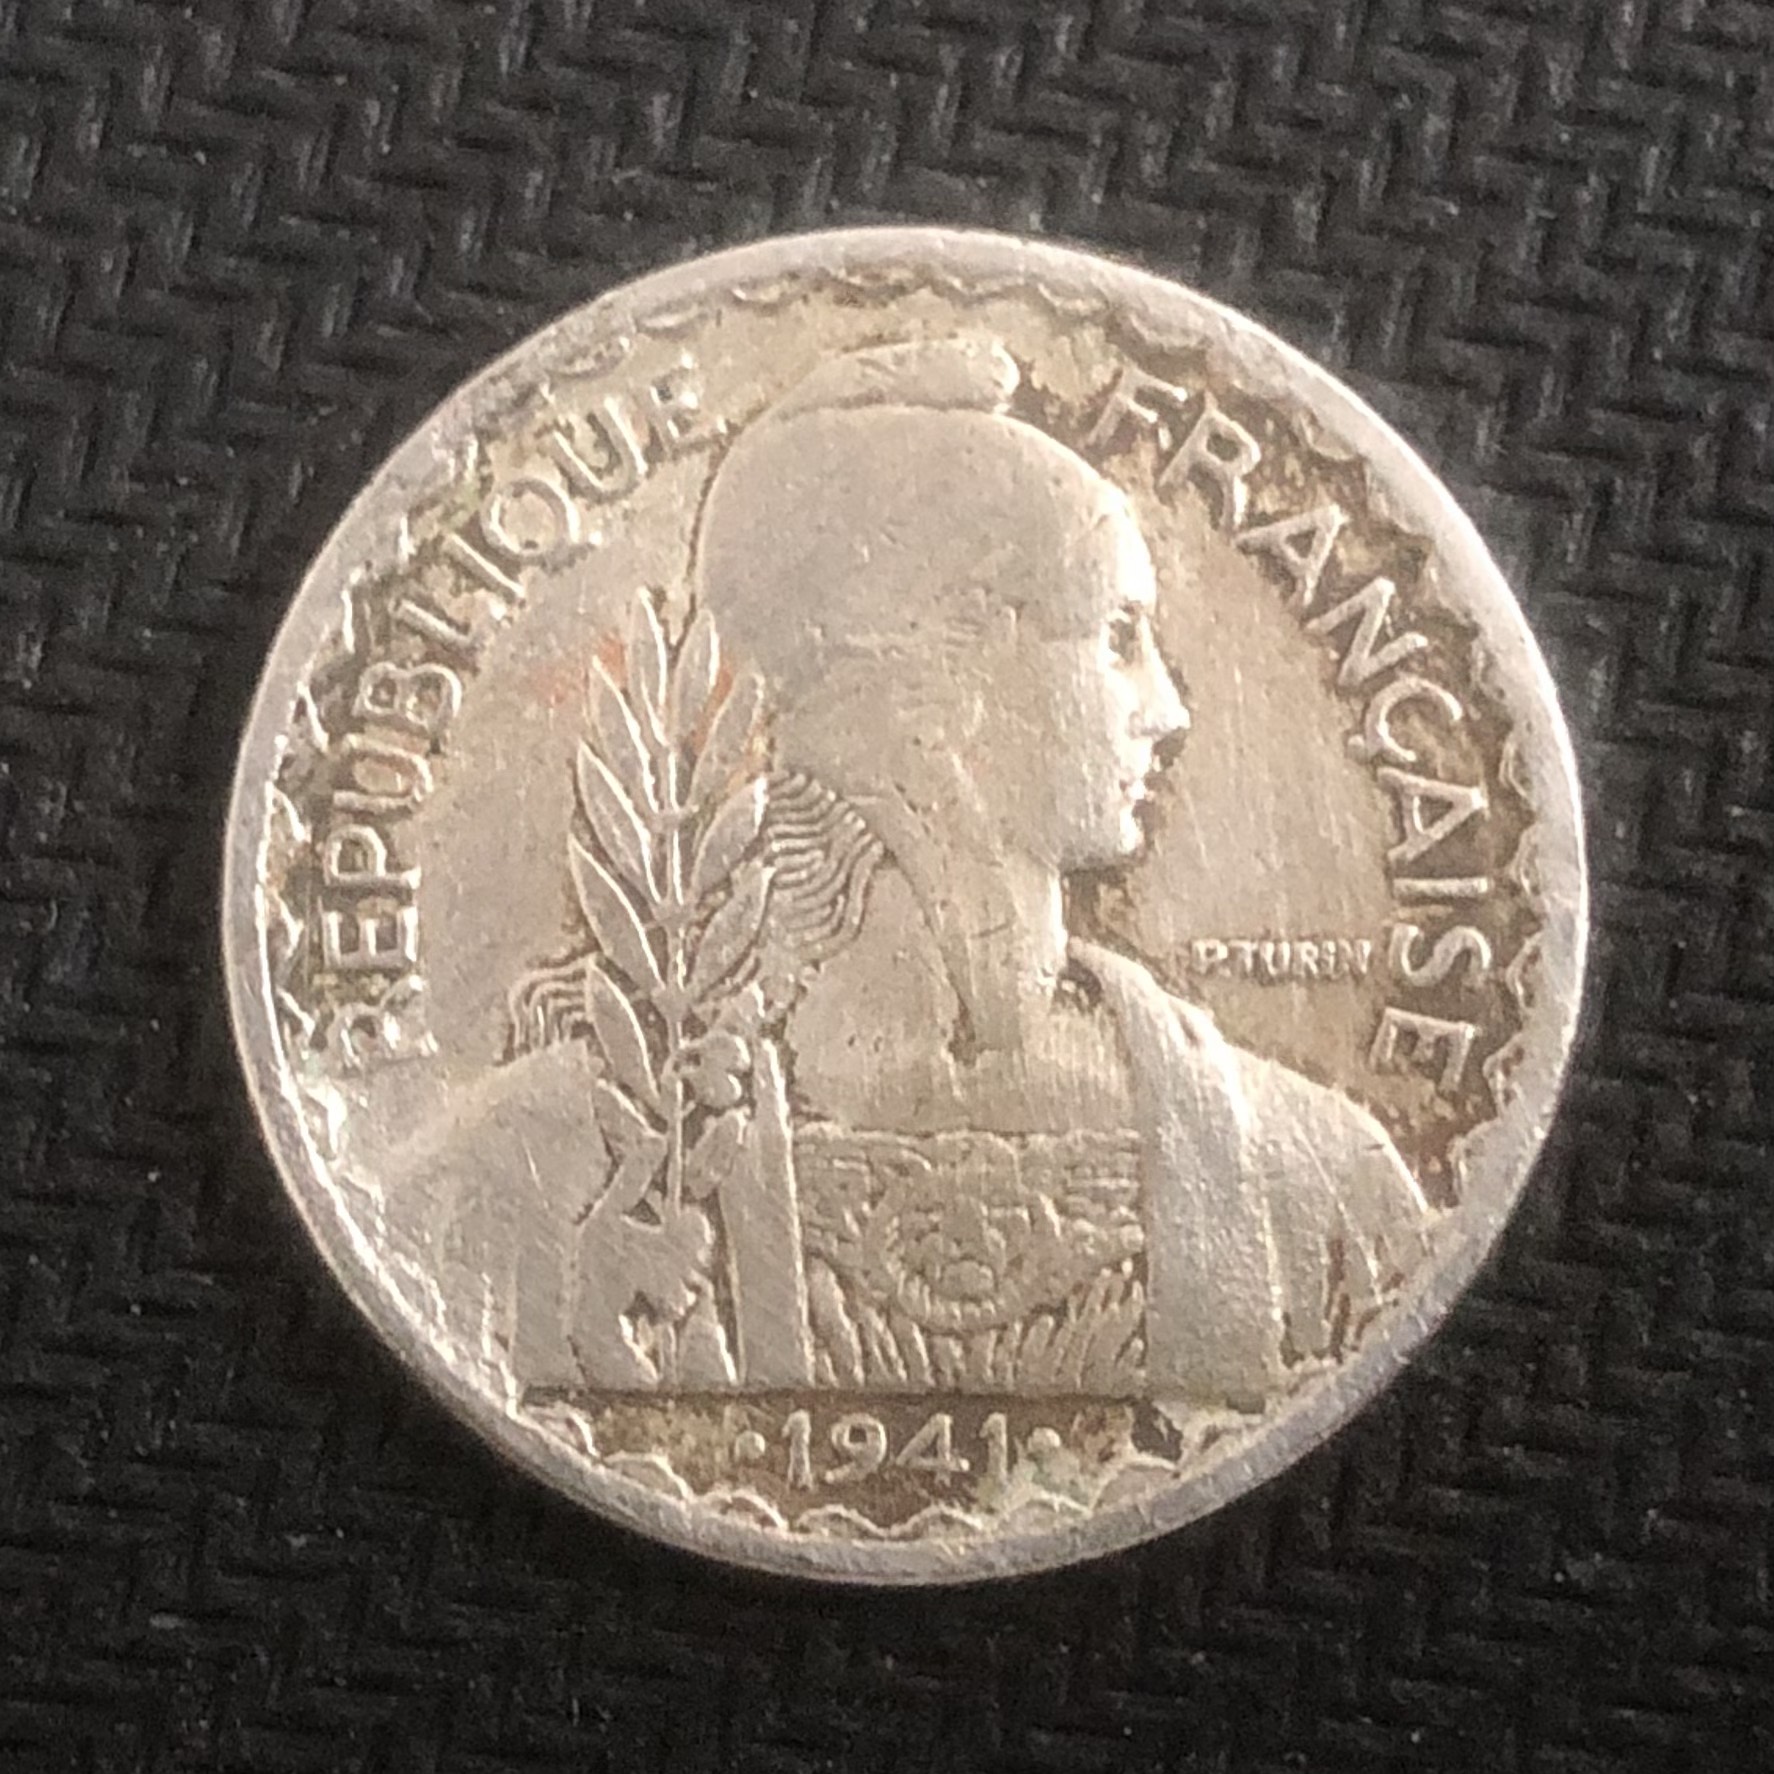 Đồng xu Đầu trọc Đông Dương mệnh giá 20 cent năm 1941